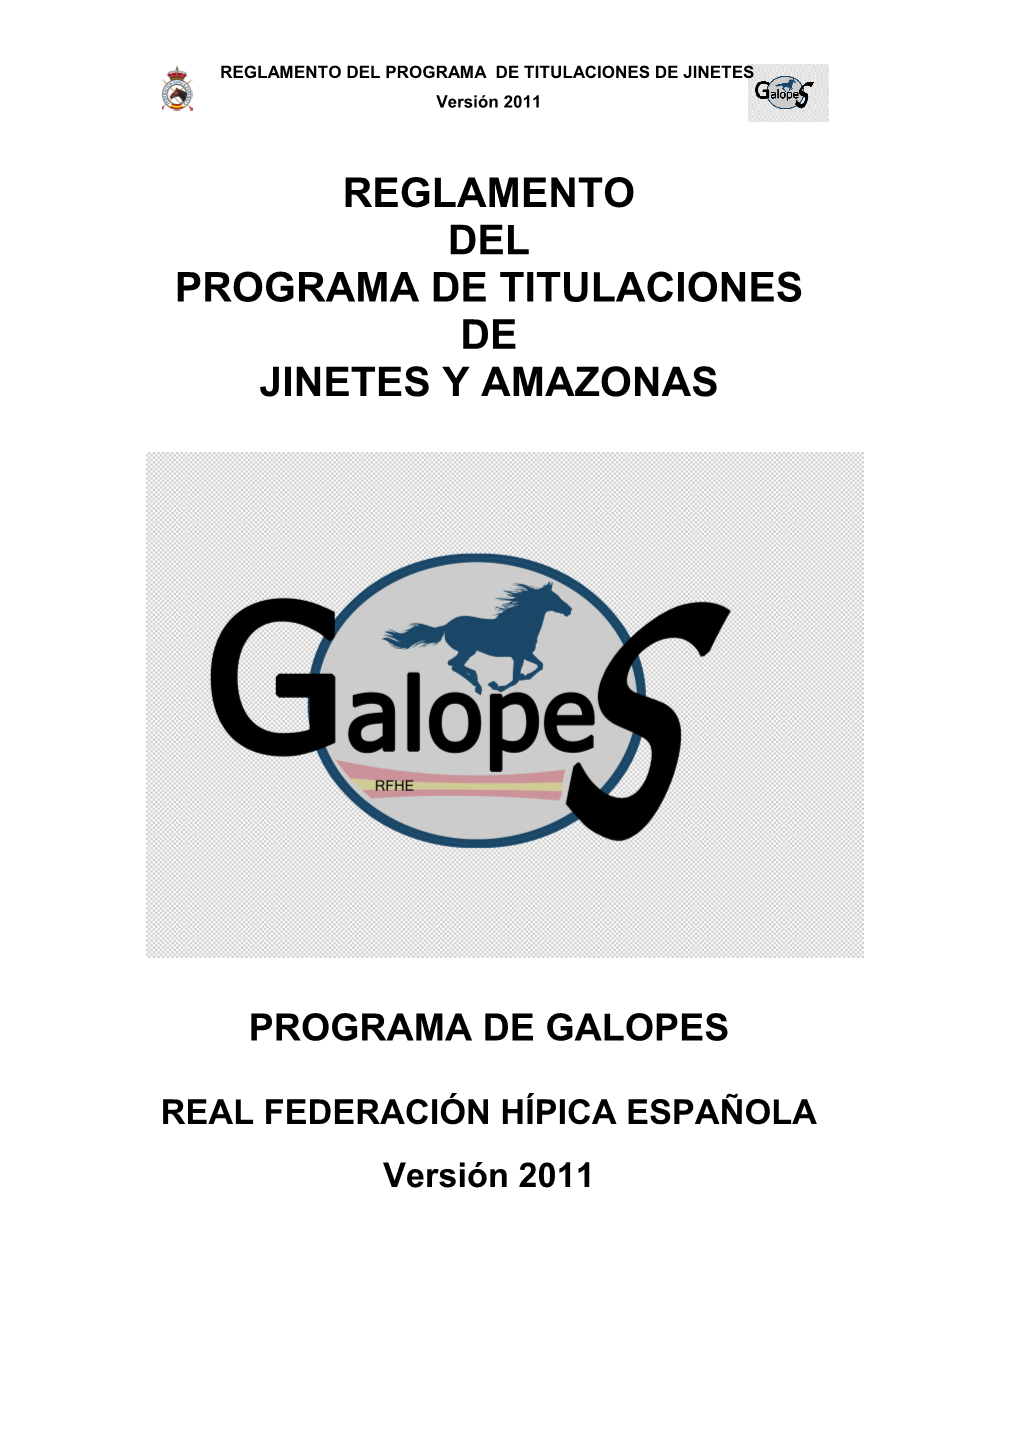 REGLAMENTO DE TITULACIONES. GALOPES. Version 2011 VISTO